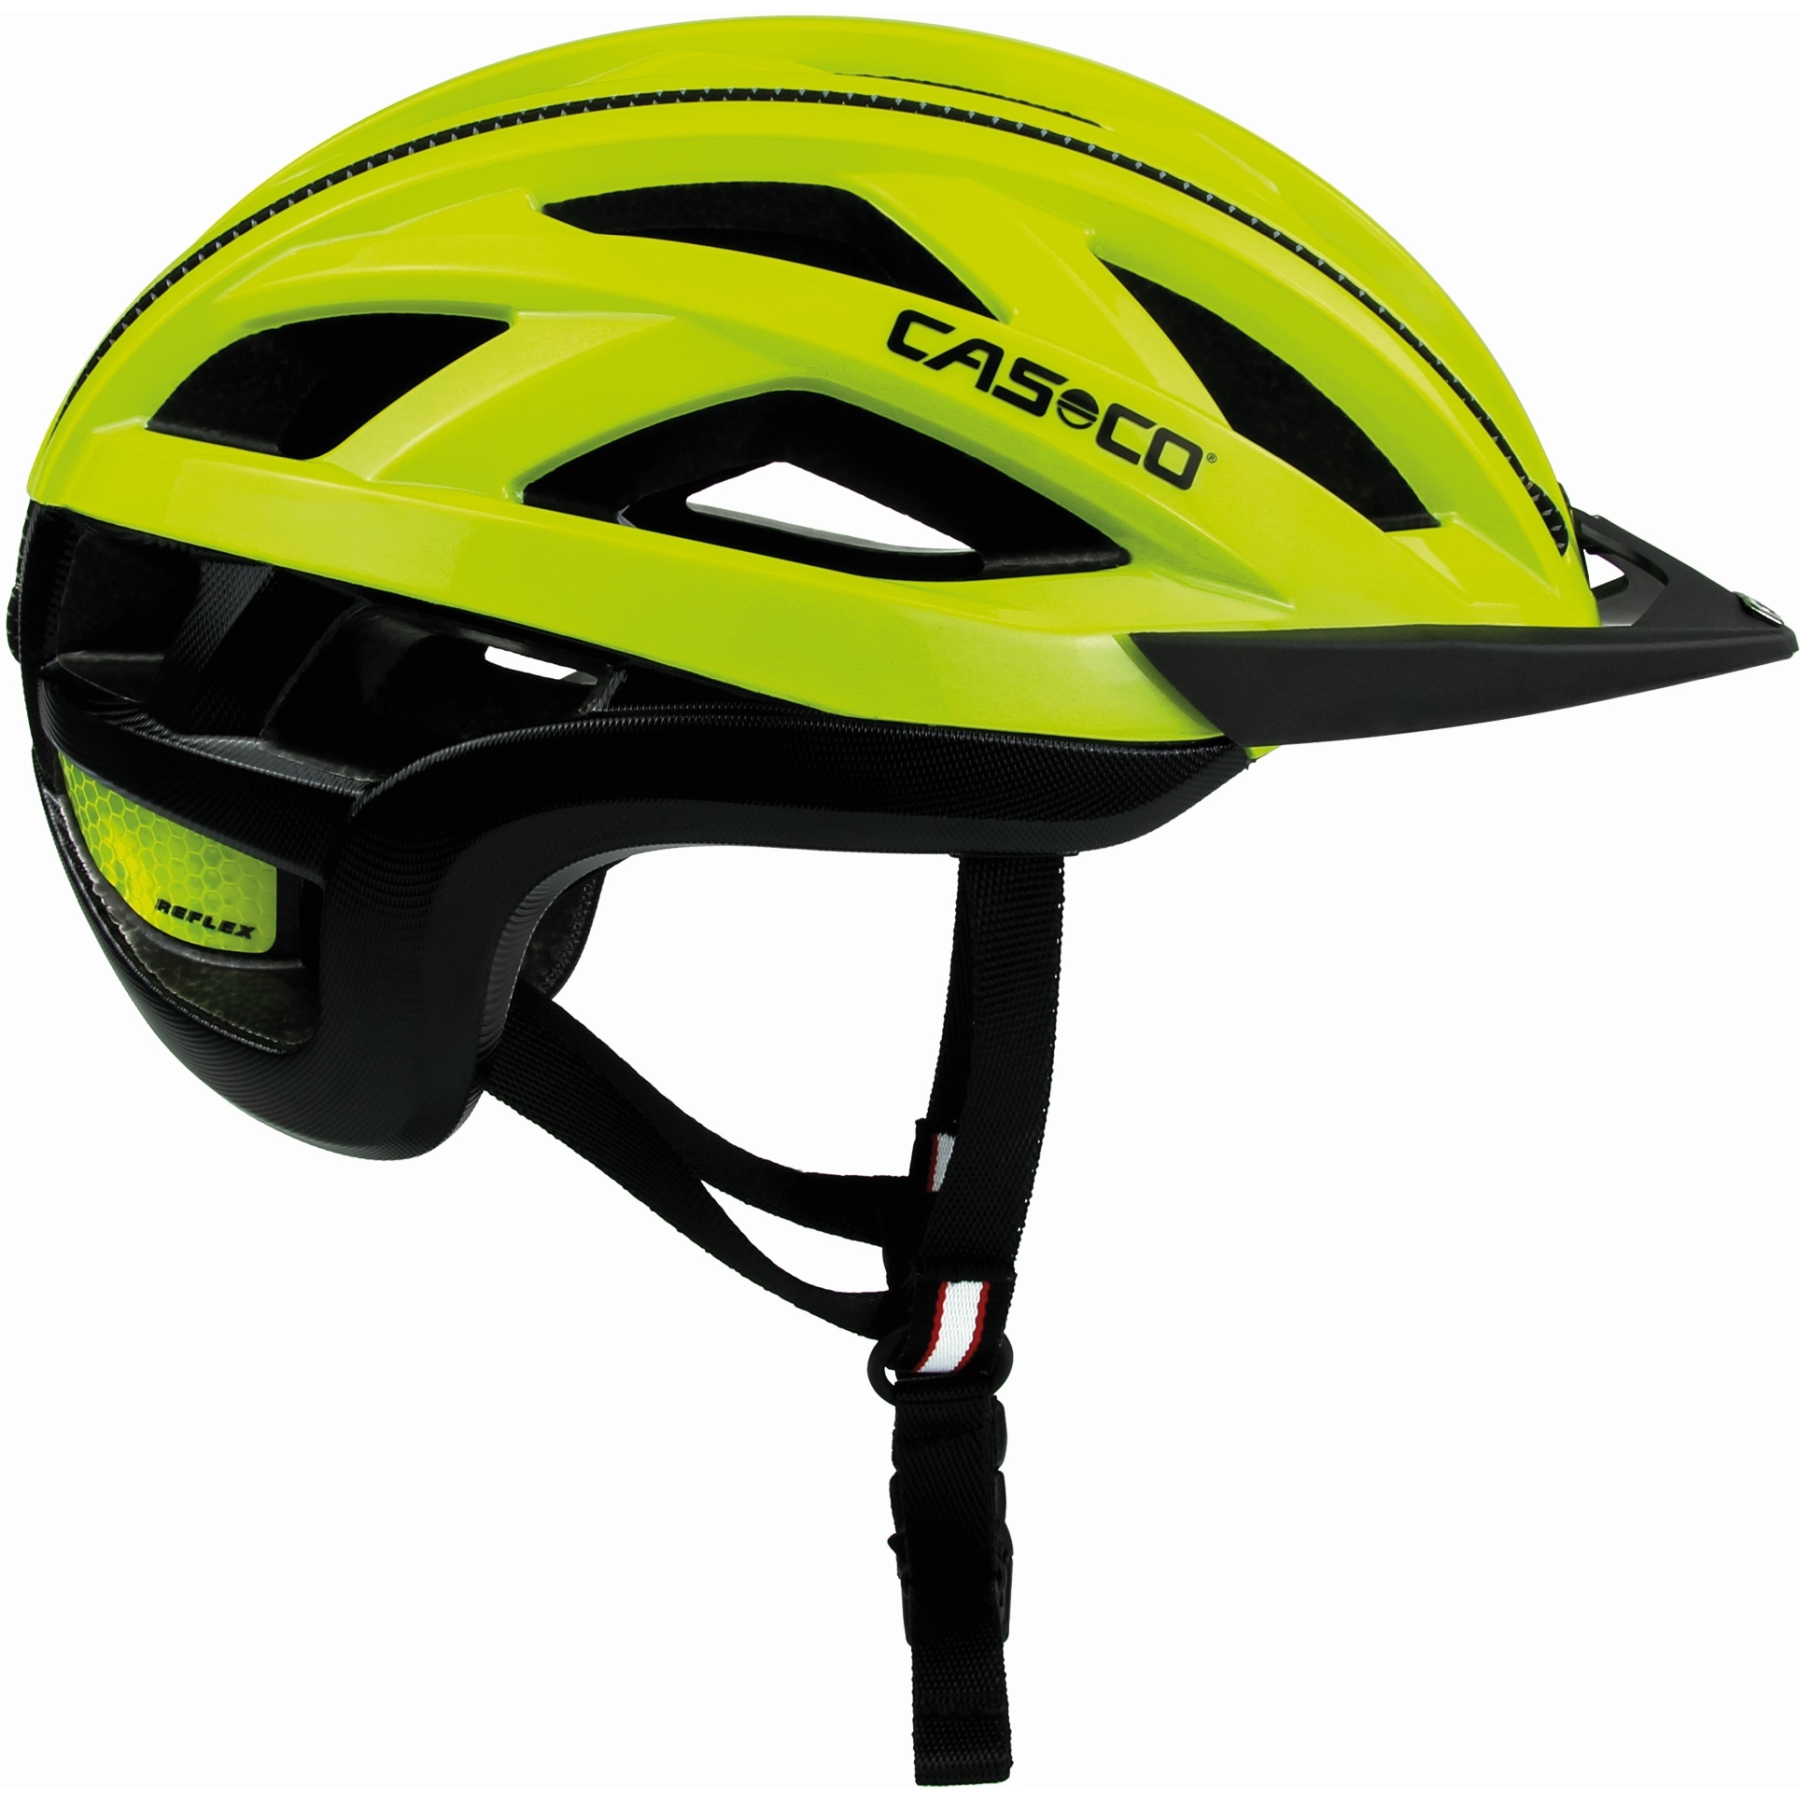 Produktbild von Casco Cuda 2 Helm - neongelb glanz